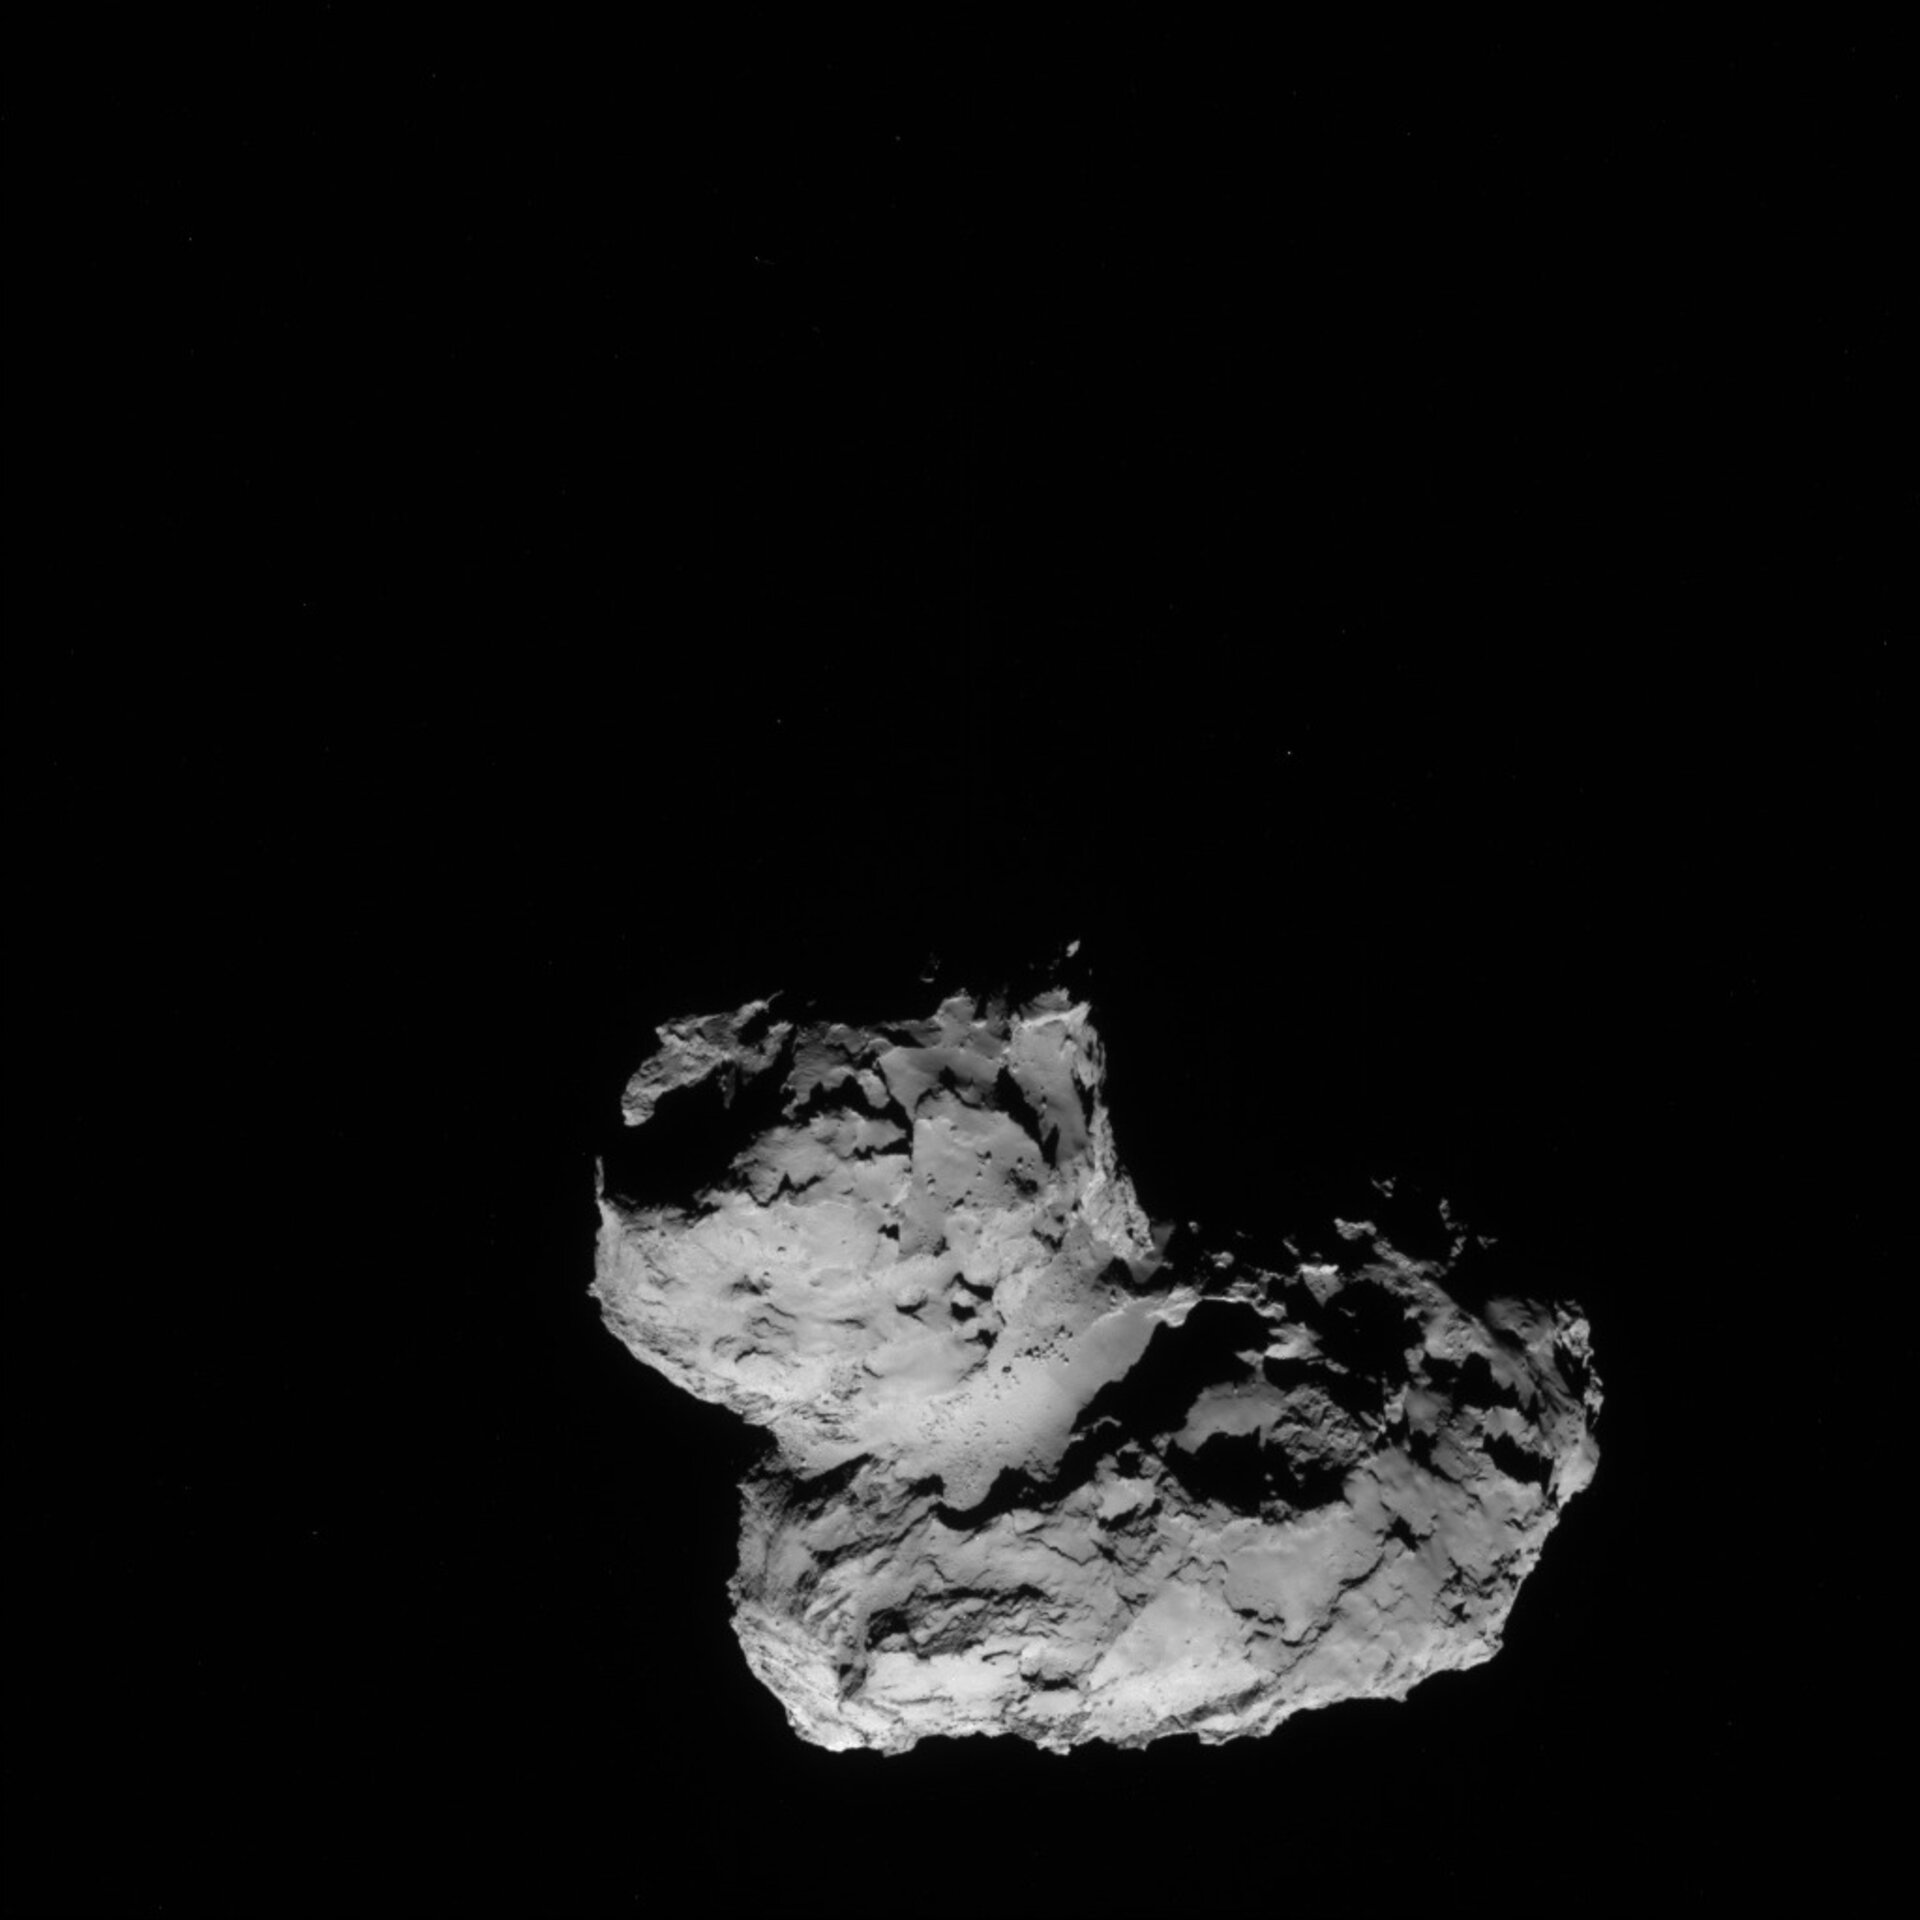 Comet on 11 August 2014 - NavCam 